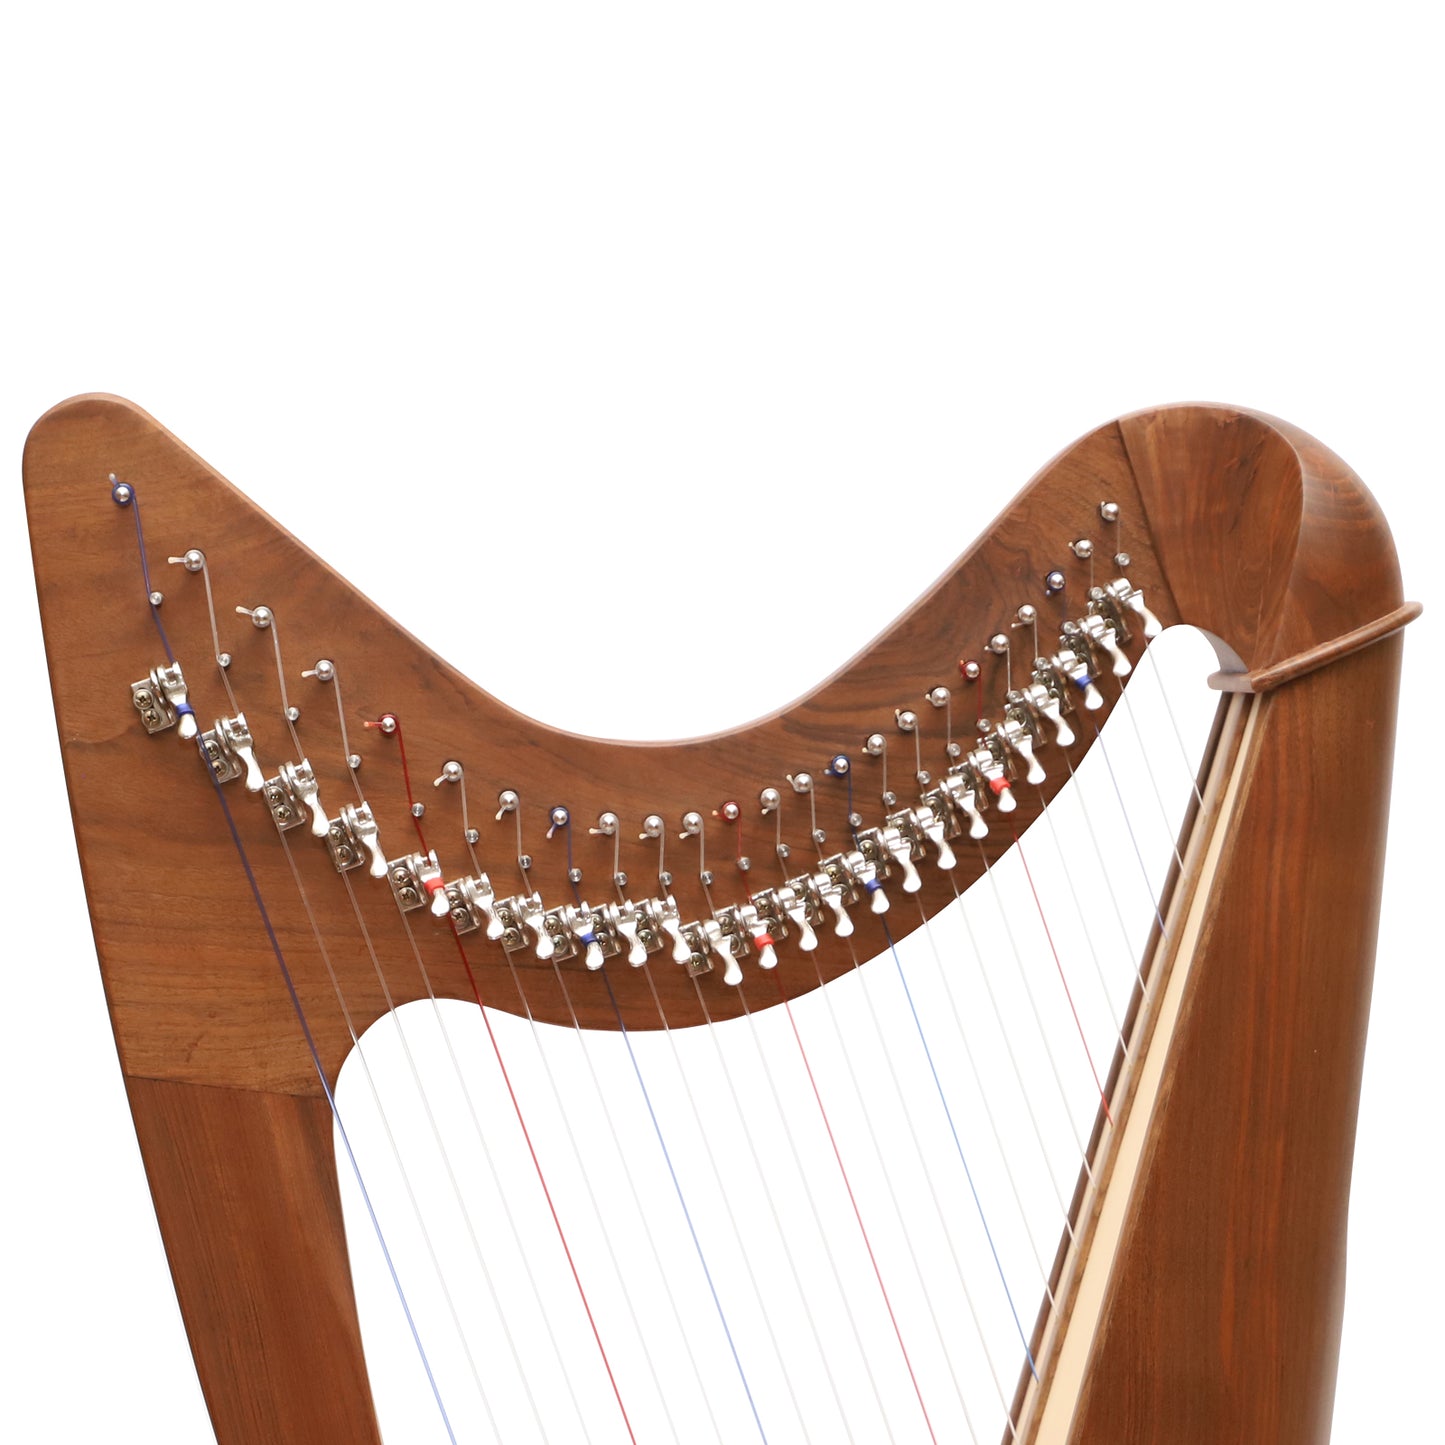 24 String Claddagh Harp Walnut